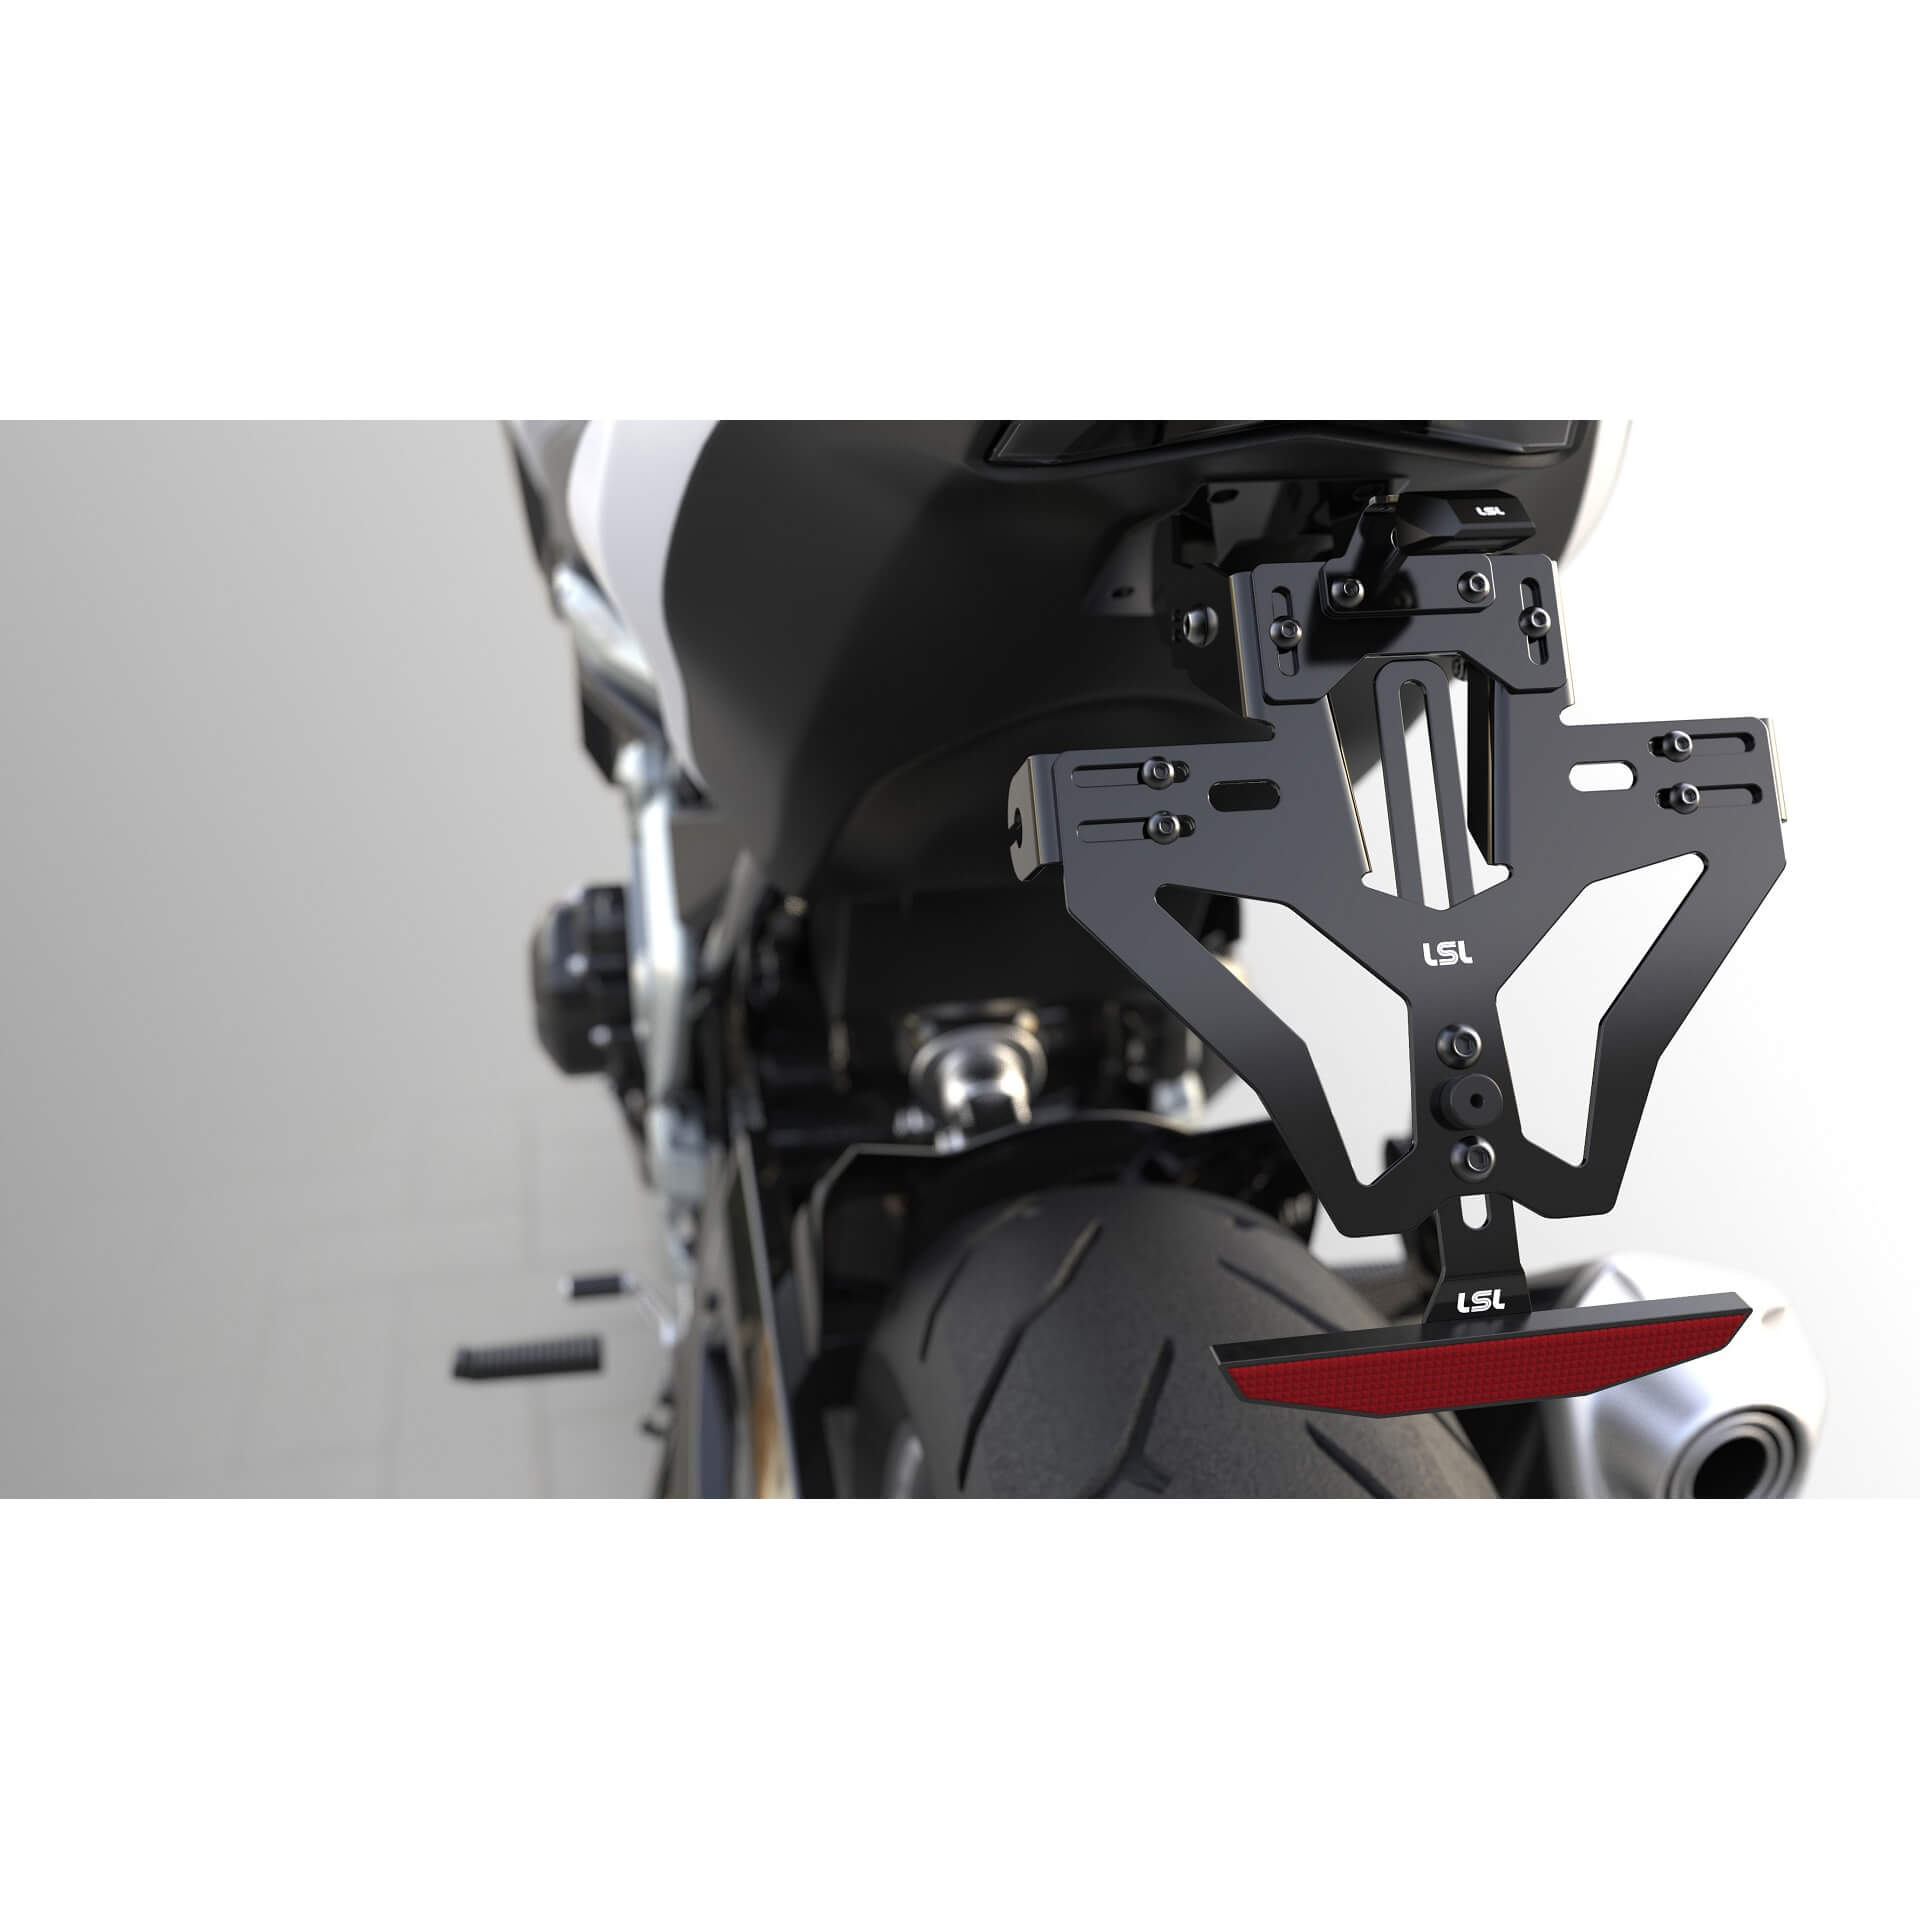 lsl MANTIS-RS PRO für KTM 1290 SuperDuke GT 16-19, inkl. Kennzeichenbeleuchtung